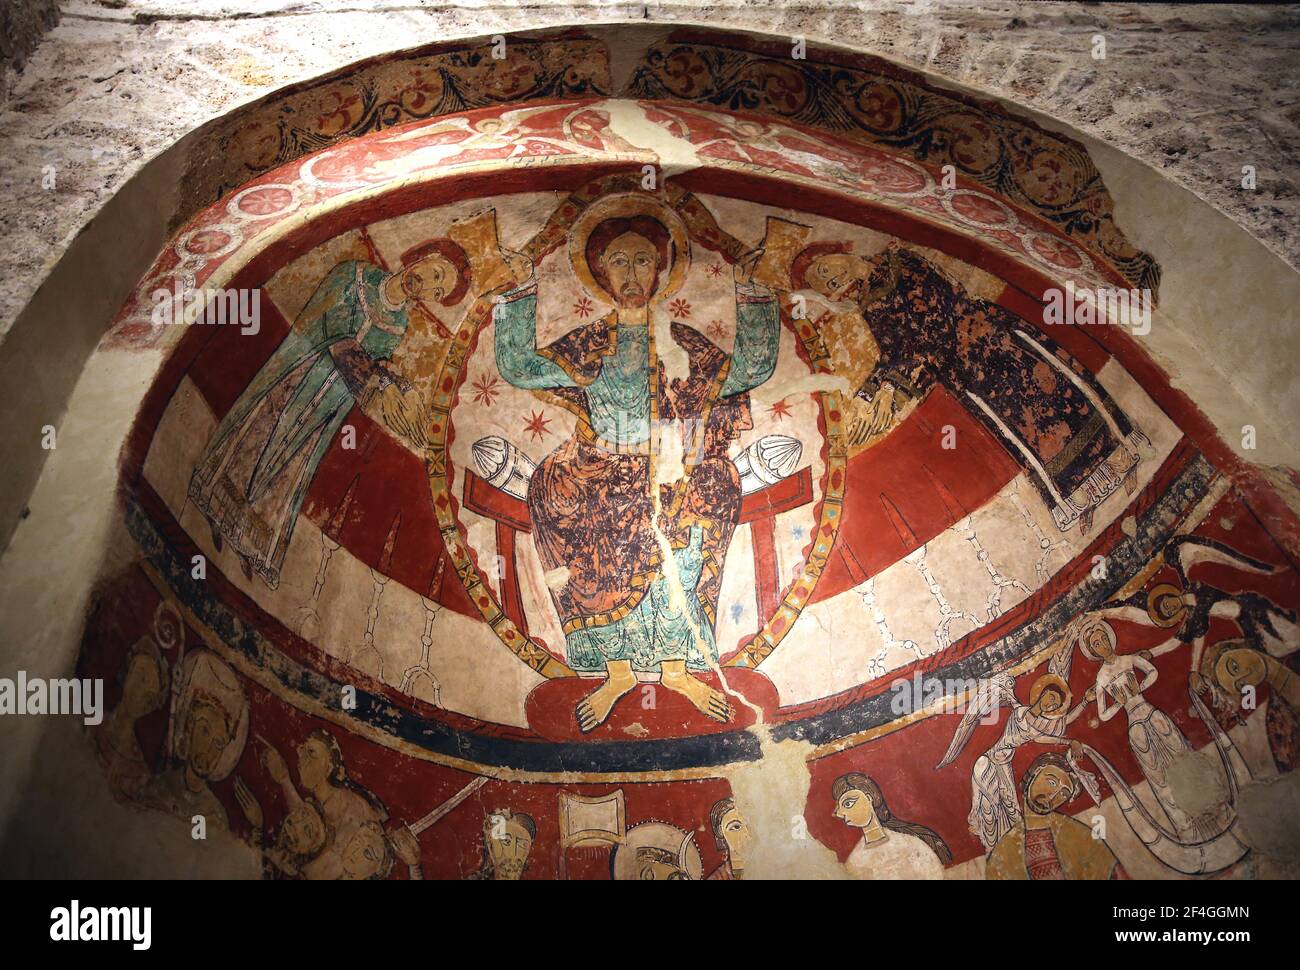 Martirio de Thomas Becket (1170) parte superior del fresco, detalle. 12th-13th siglos. Iglesia de Santa María de Terrassa. Cataluña, España. Foto de stock